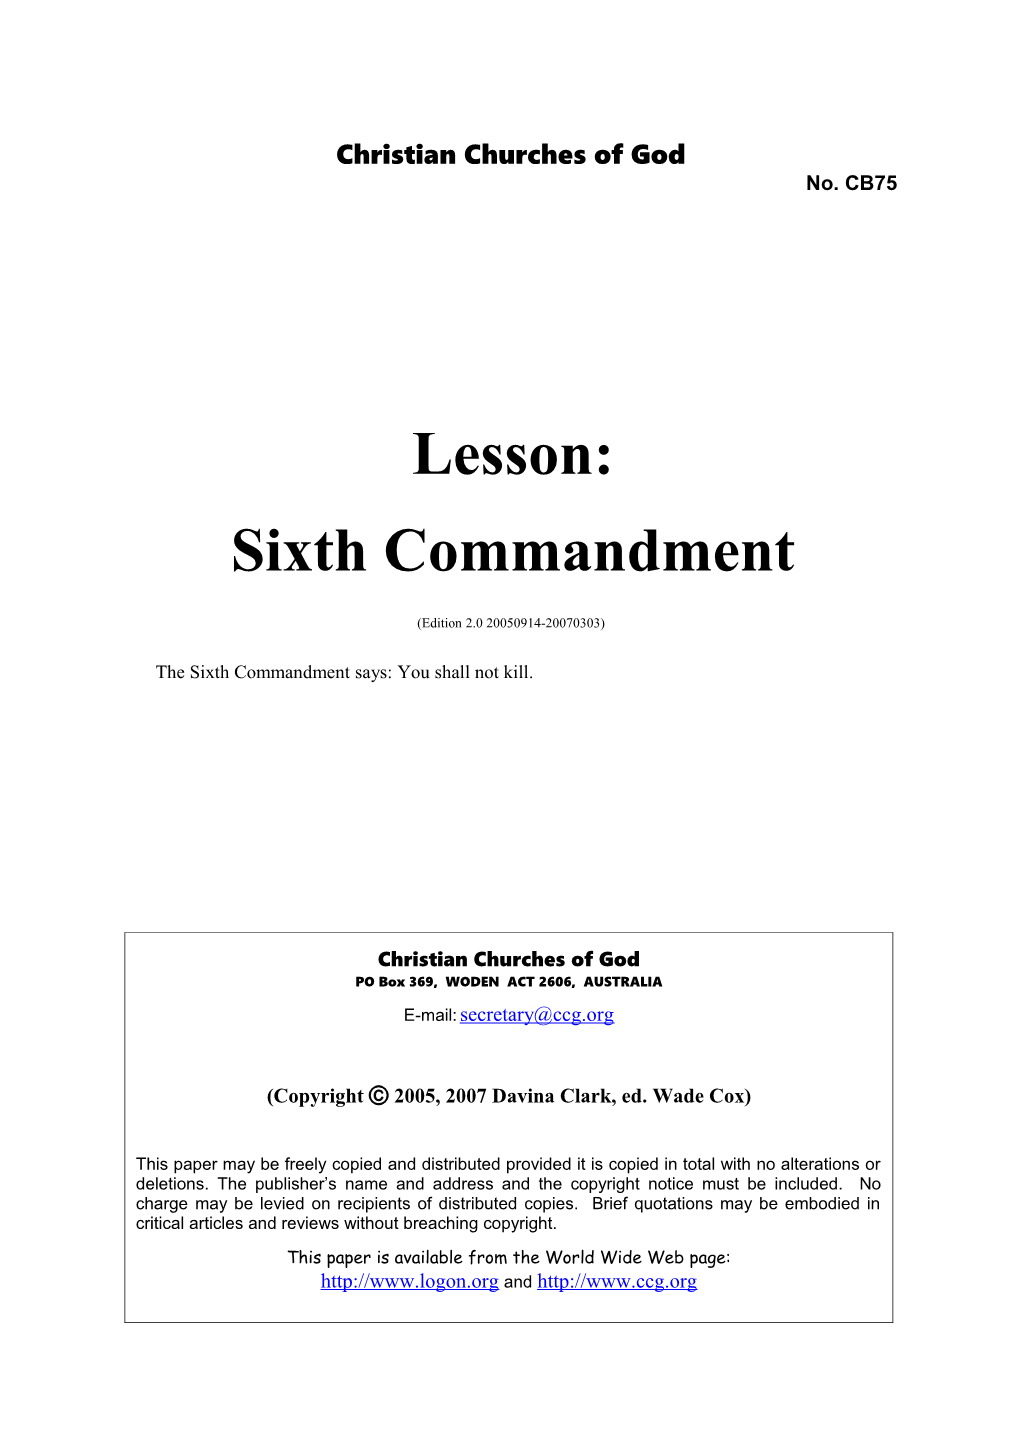 Lesson: Sixth Commandment (No. CB75)